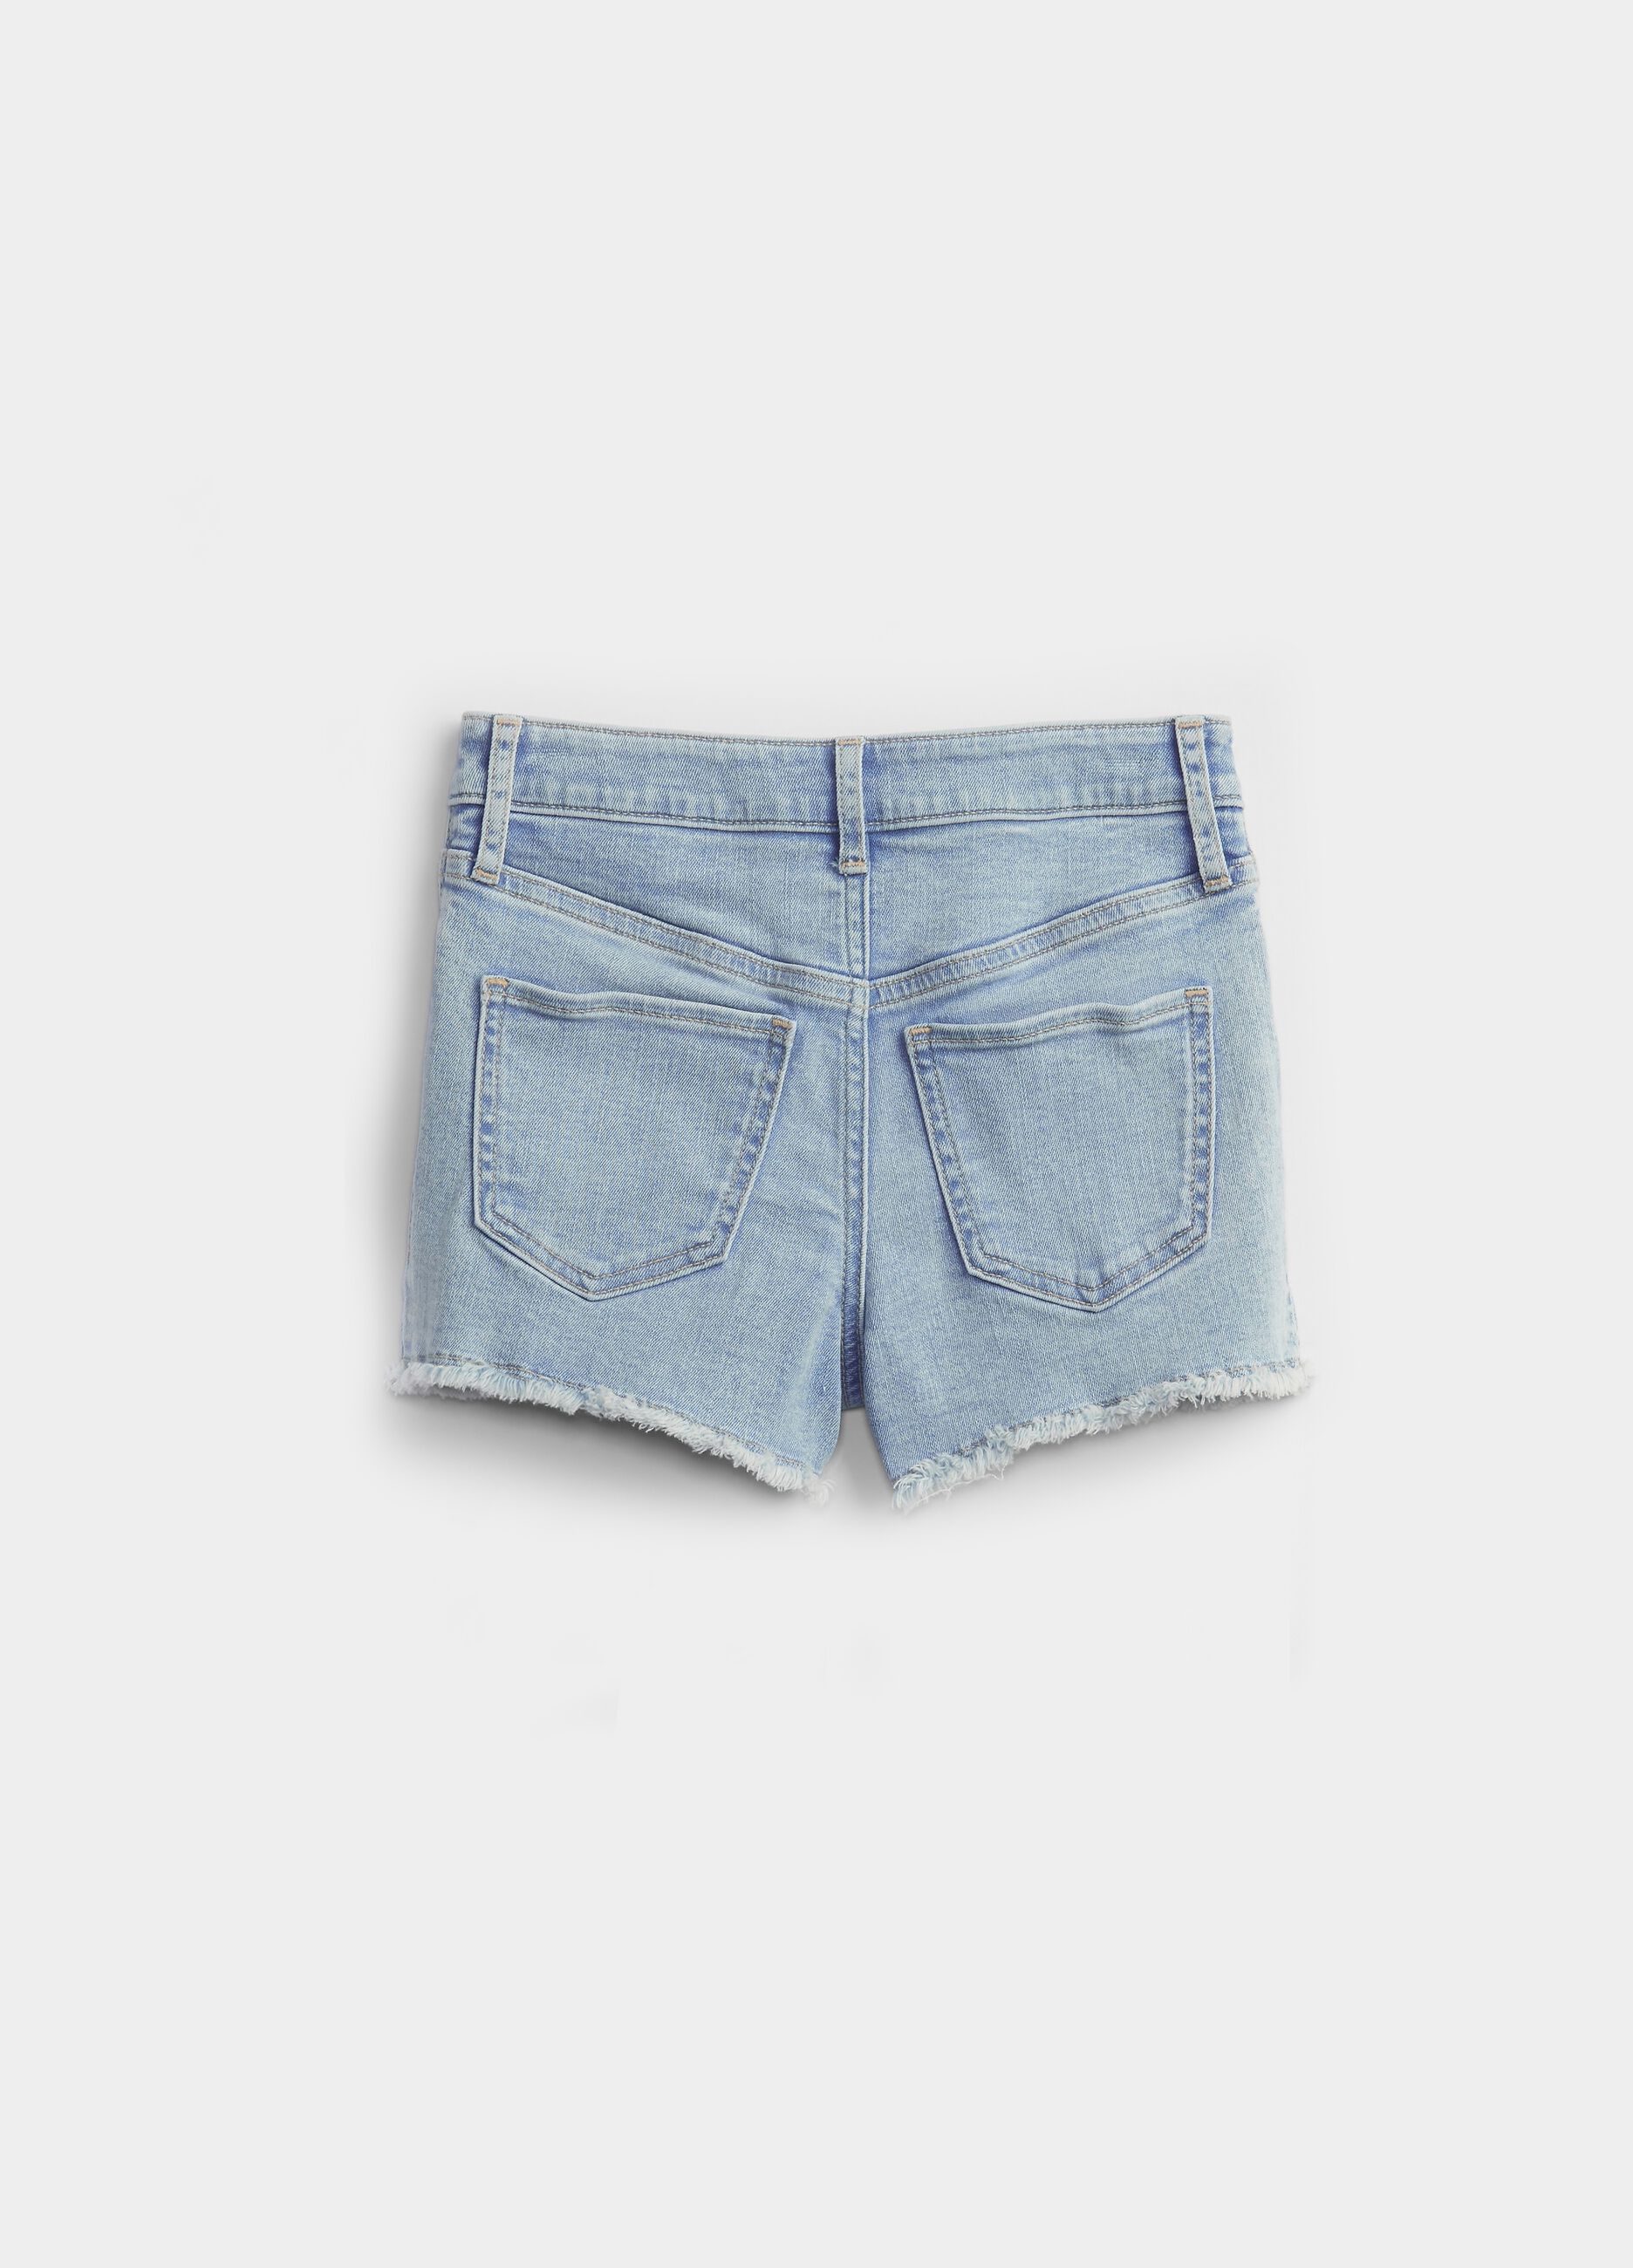 Denim shorts with fringed edging